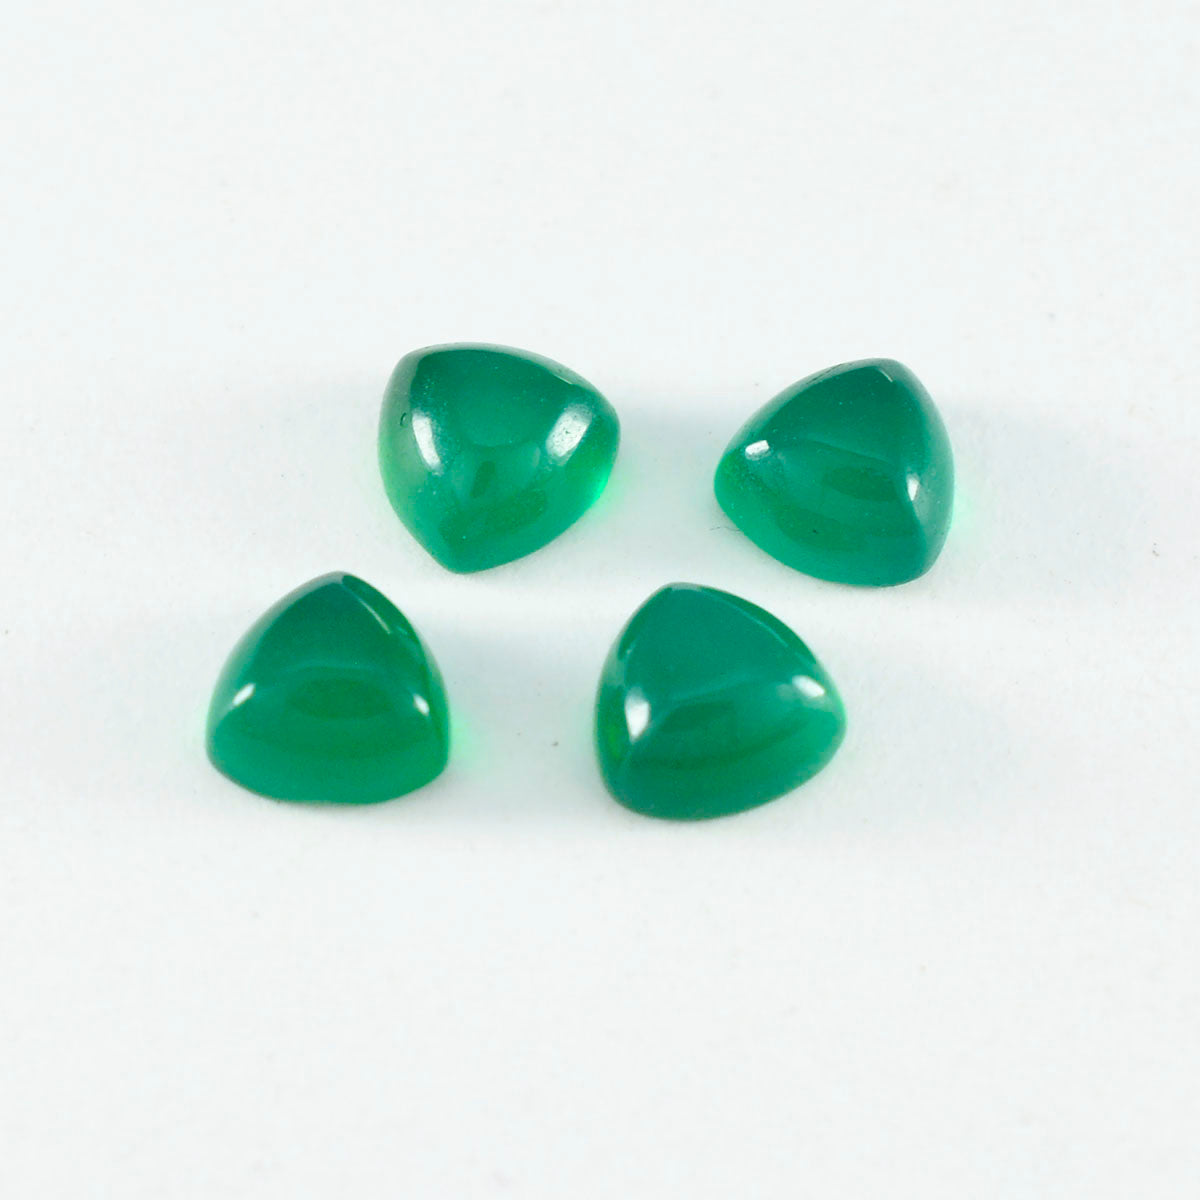 Riyogems 1 Stück grüner Onyx-Cabochon, 10 x 10 mm, Trillionenform, wunderbare Qualität, lose Edelsteine